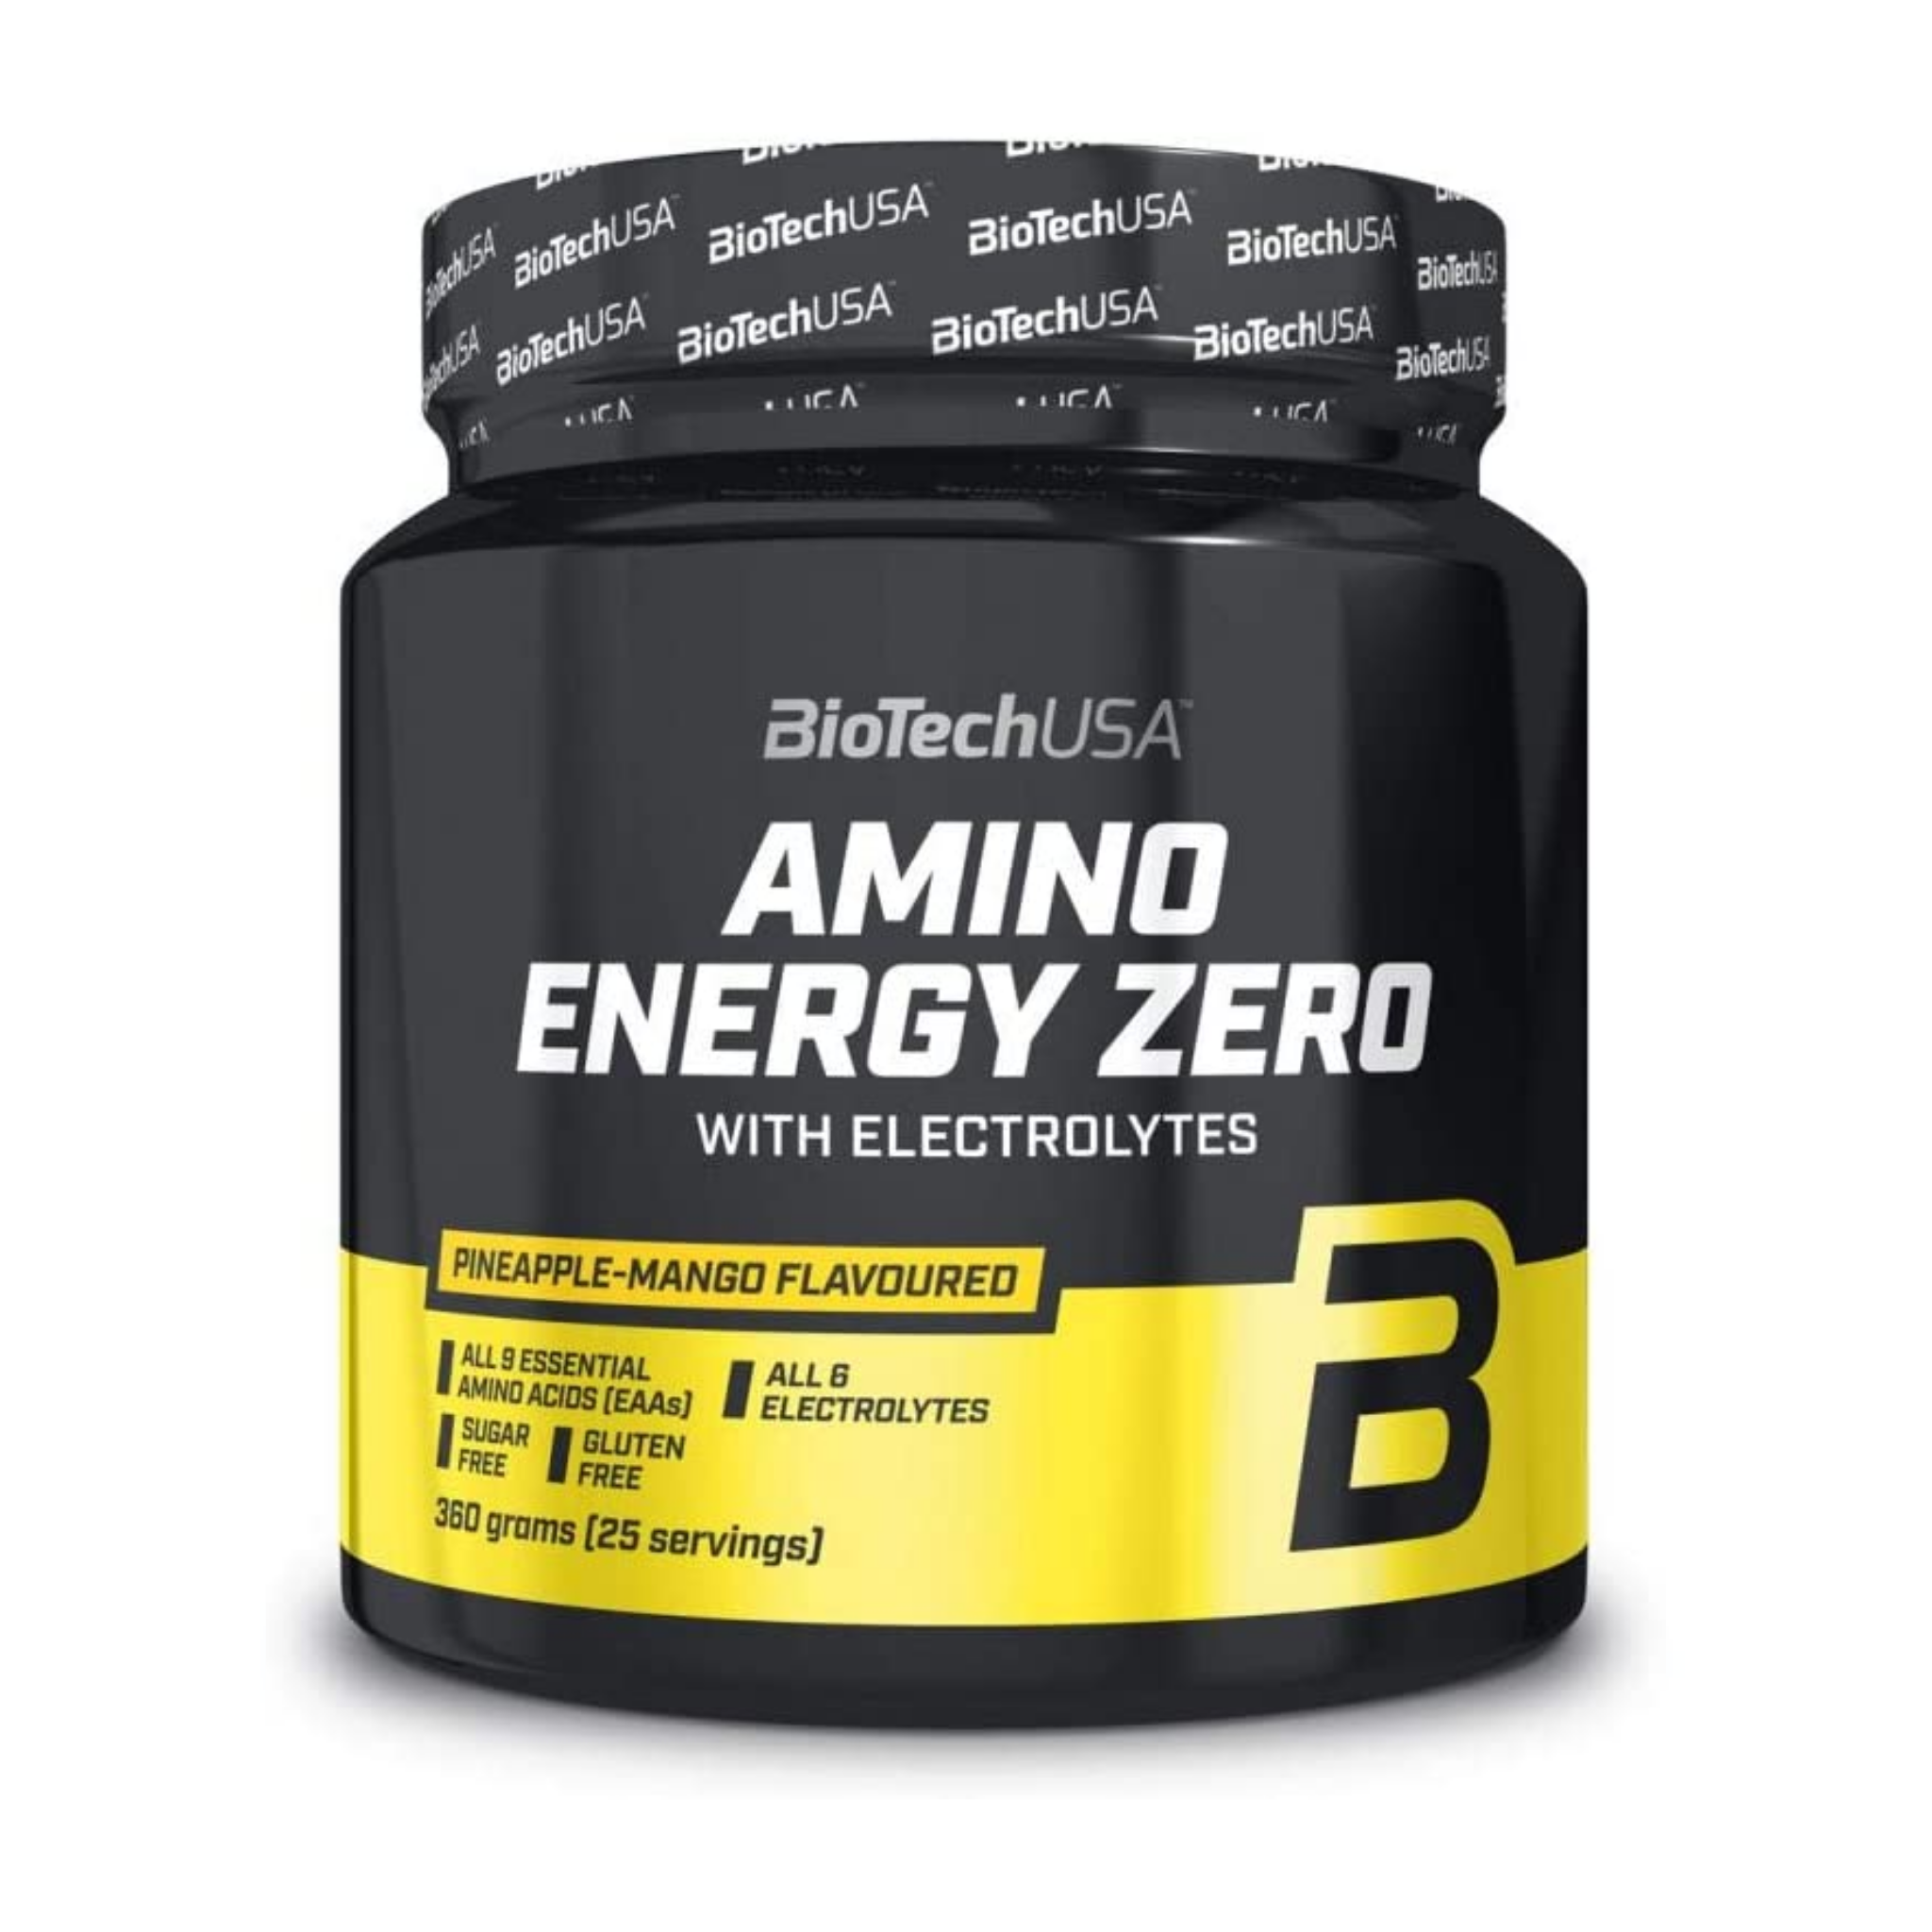 BioTechUSA Amino Energy Zero with Electrolytes